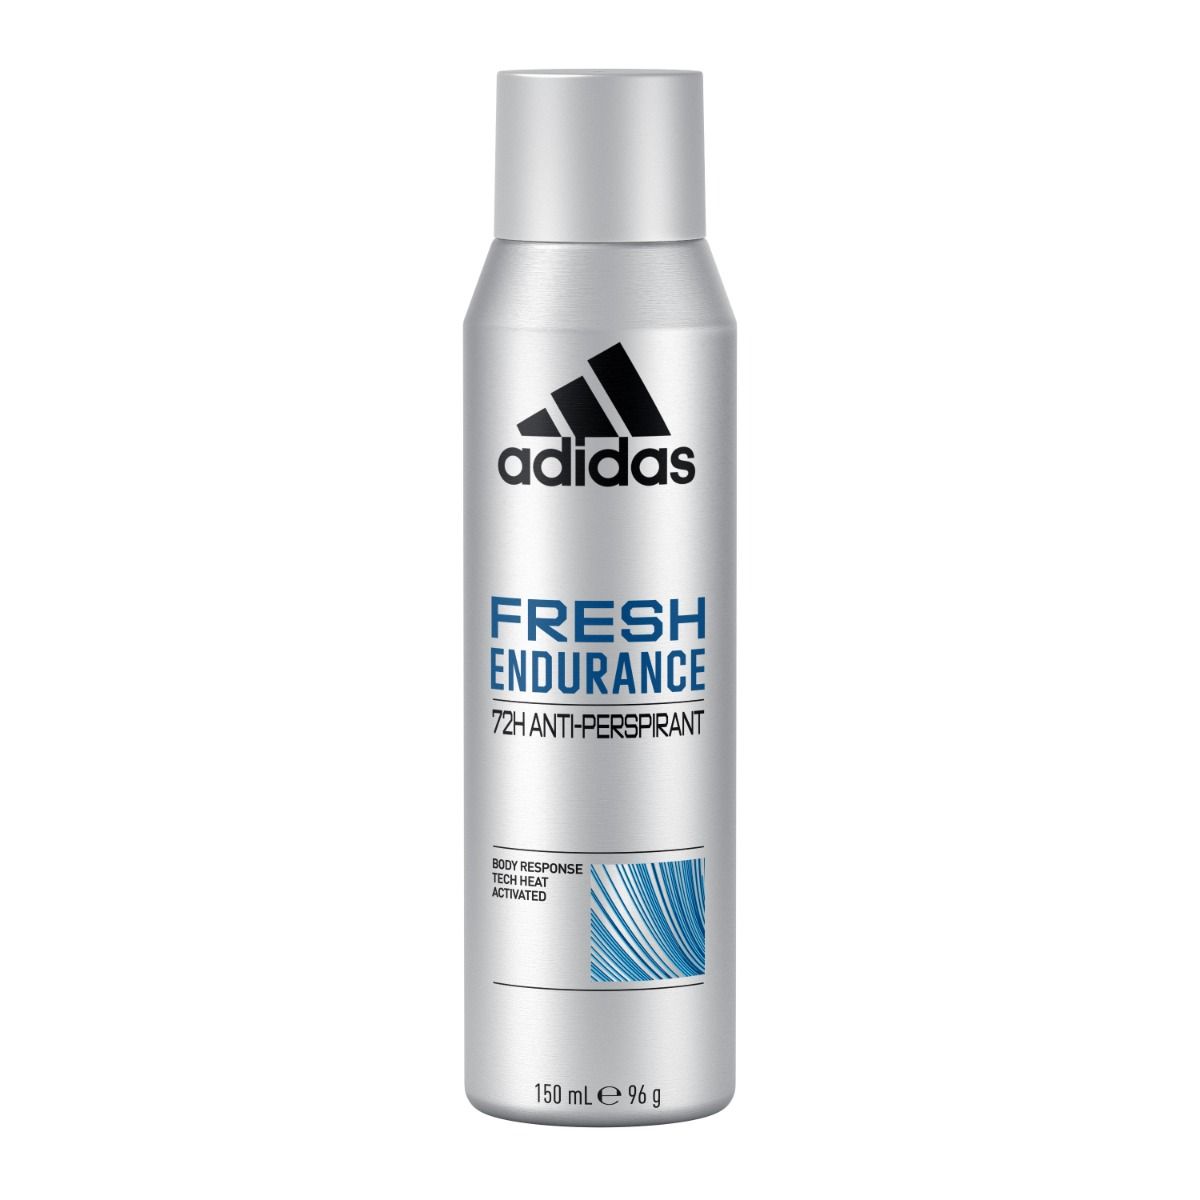 Adidas Fresh Endurance антиперспирант для мужчин, 150 ml